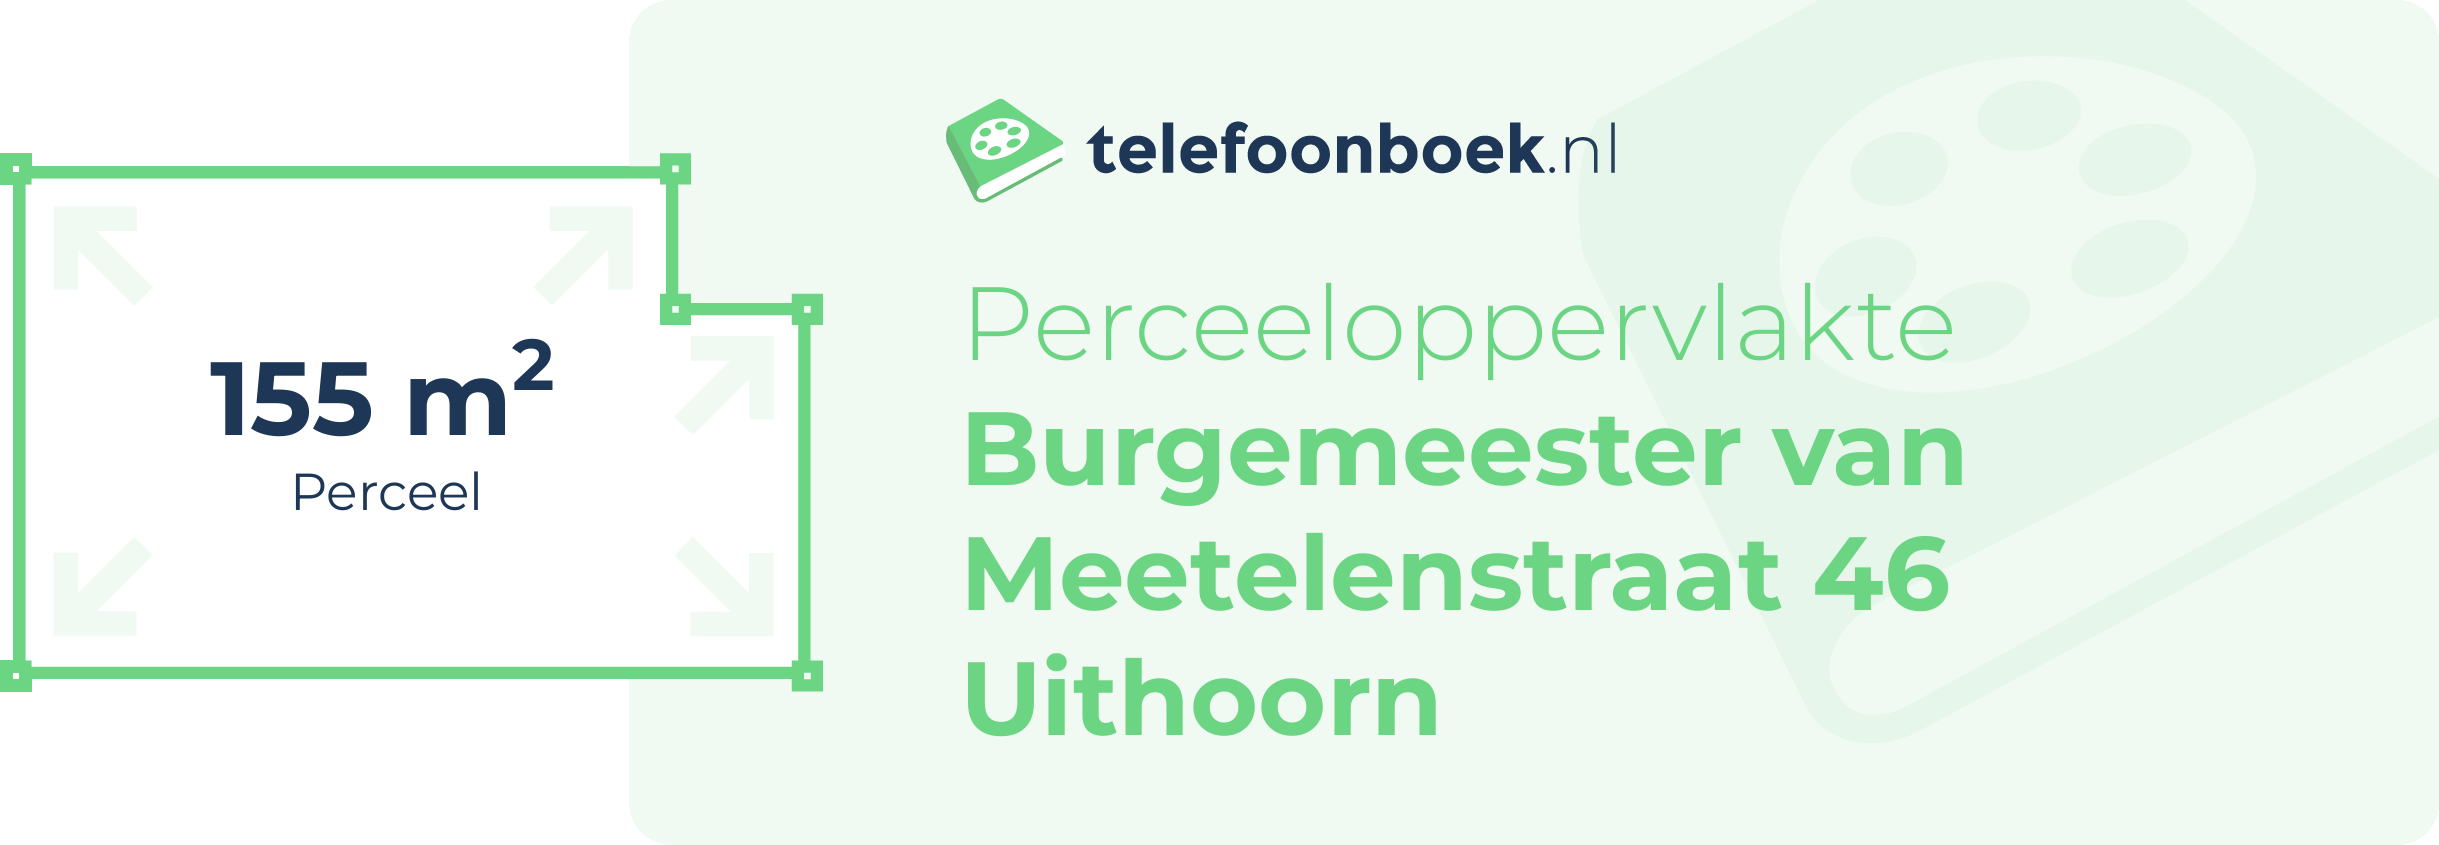 Perceeloppervlakte Burgemeester Van Meetelenstraat 46 Uithoorn